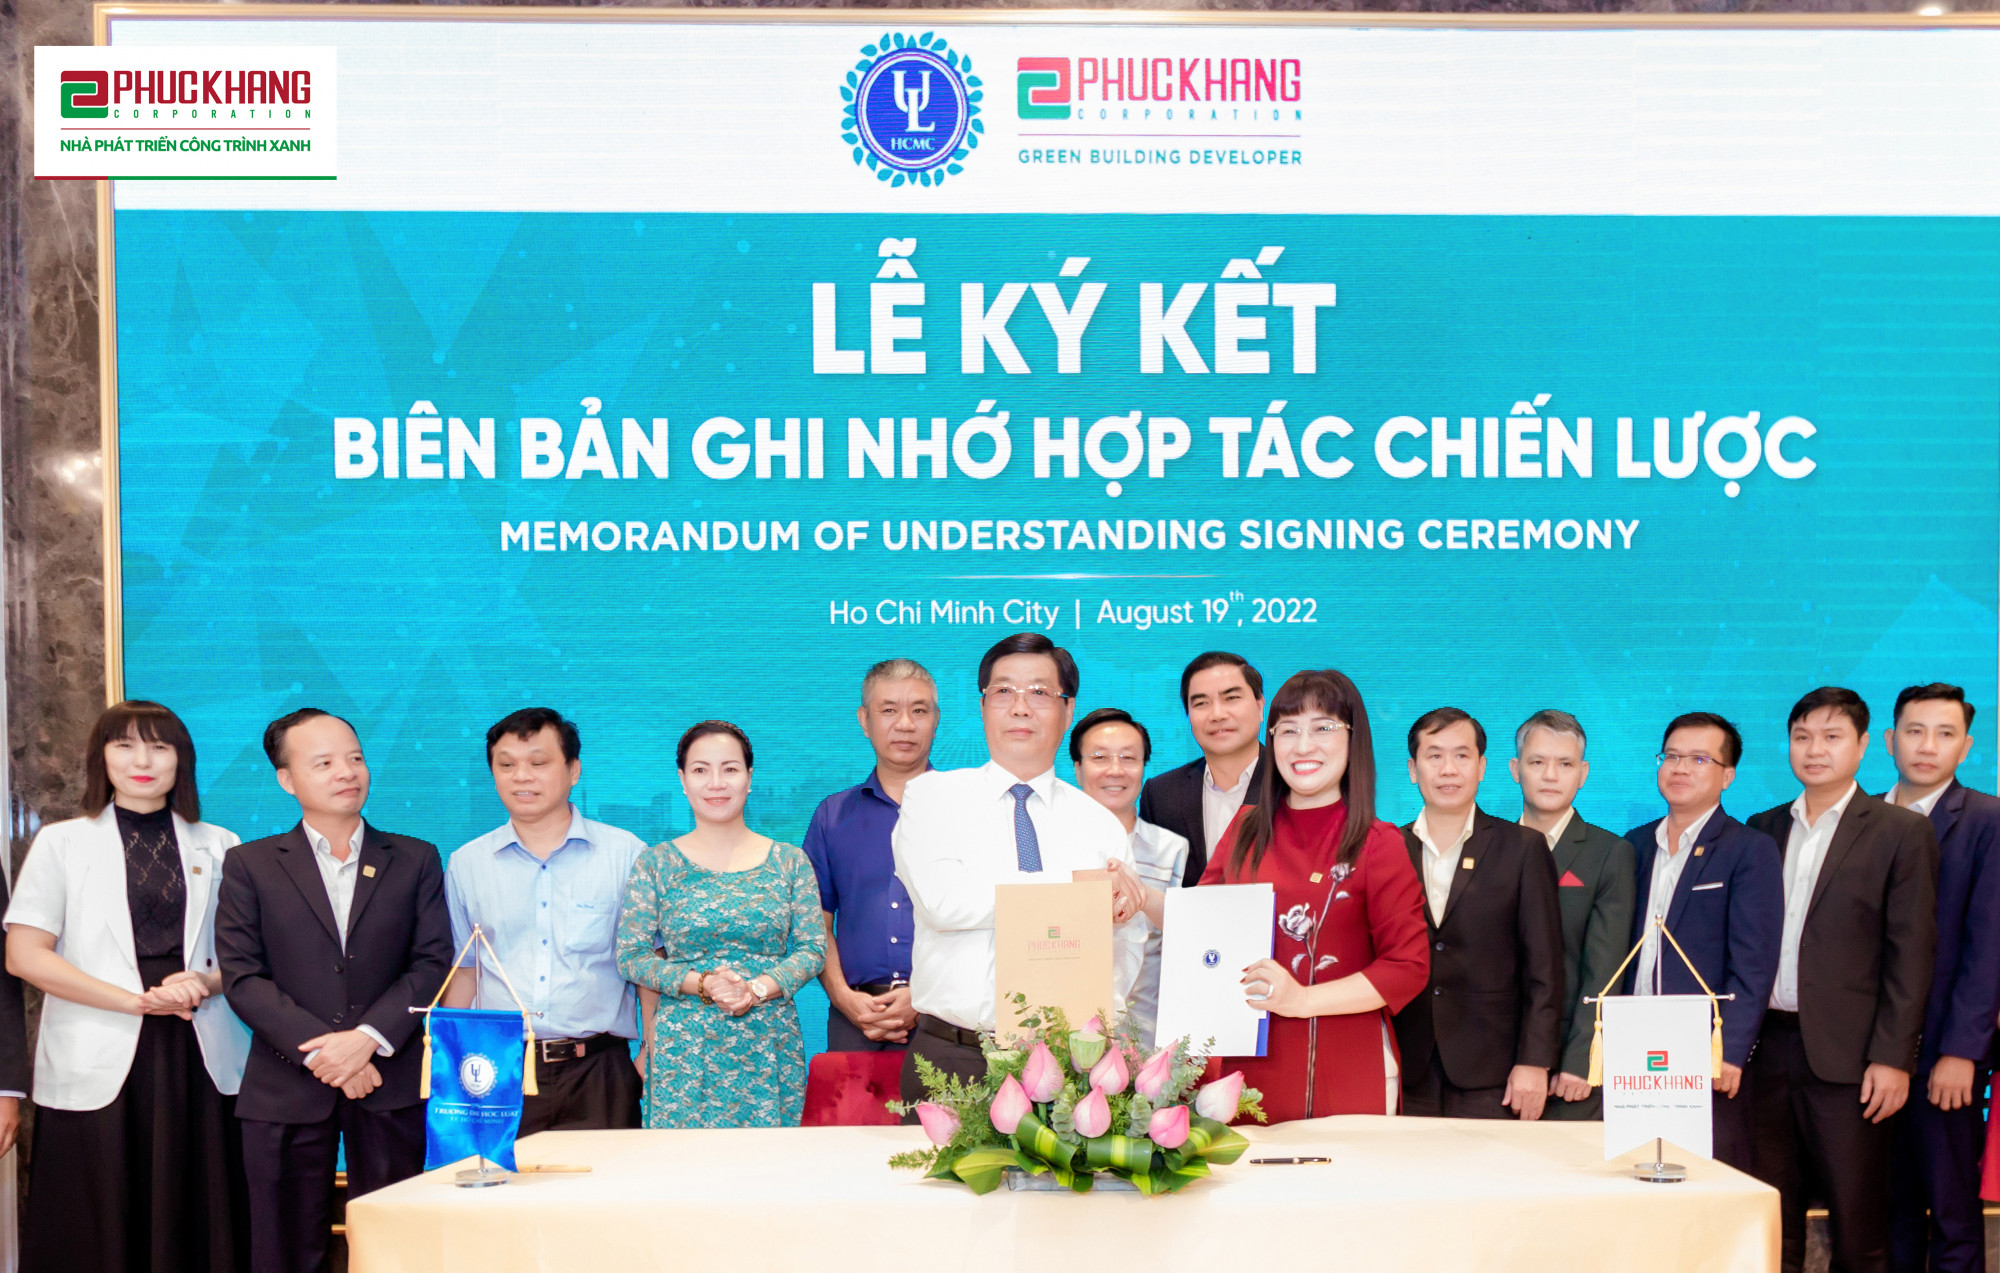 Đại diện Phuc Khang Corporation và Trường ĐH Luật TPHCM ký kết Biên bản ghi nhớ hợp tác chiến lược - Ảnh: Phuc Khang Corporation